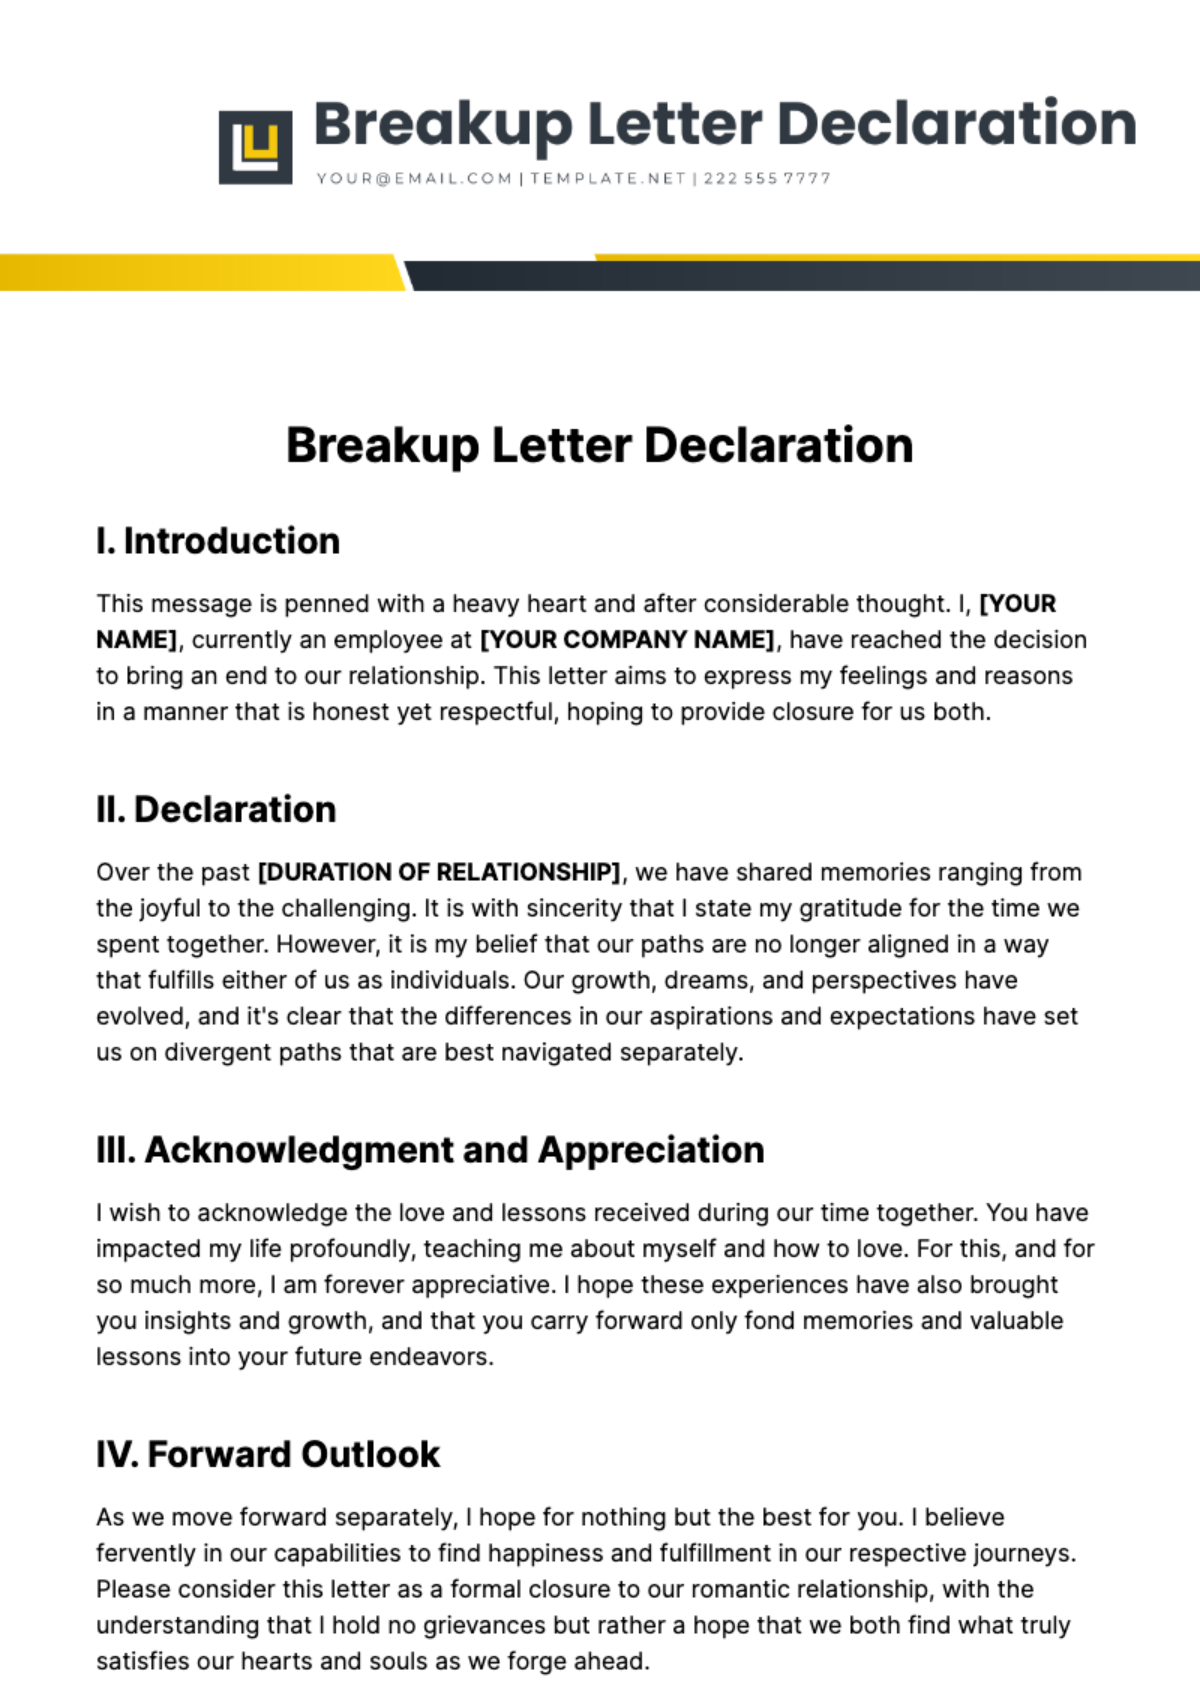 Free Breakup Letter Declaration Template